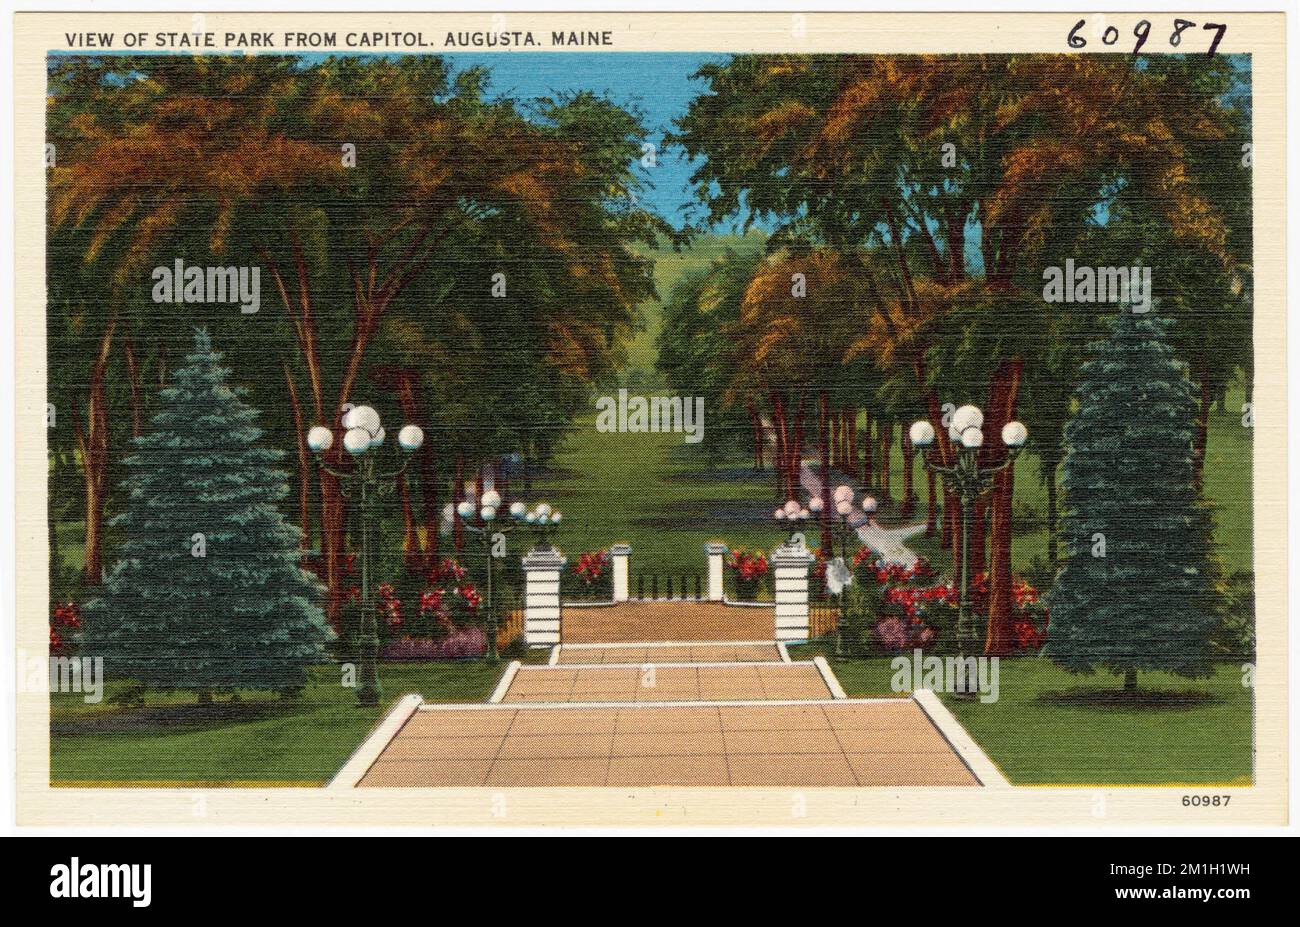 Vista del parco statale dal campidoglio, Augusta, Maine, Parchi, Tichnor Brothers Collection, Cartoline degli Stati Uniti Foto Stock